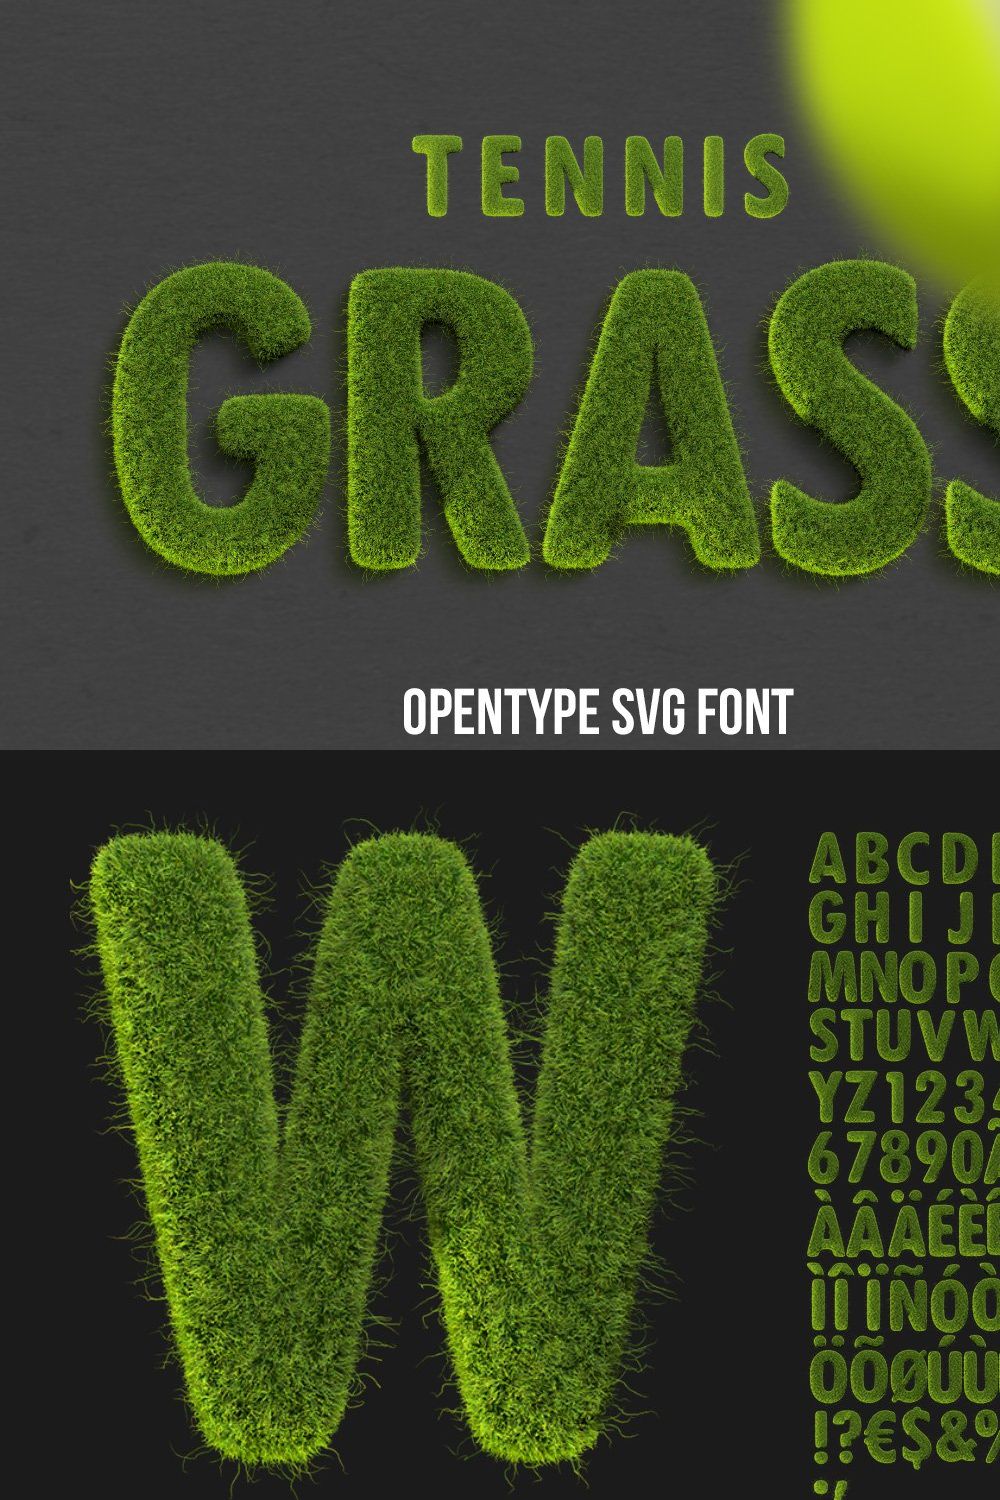 Tennis Grass Font pinterest preview image.